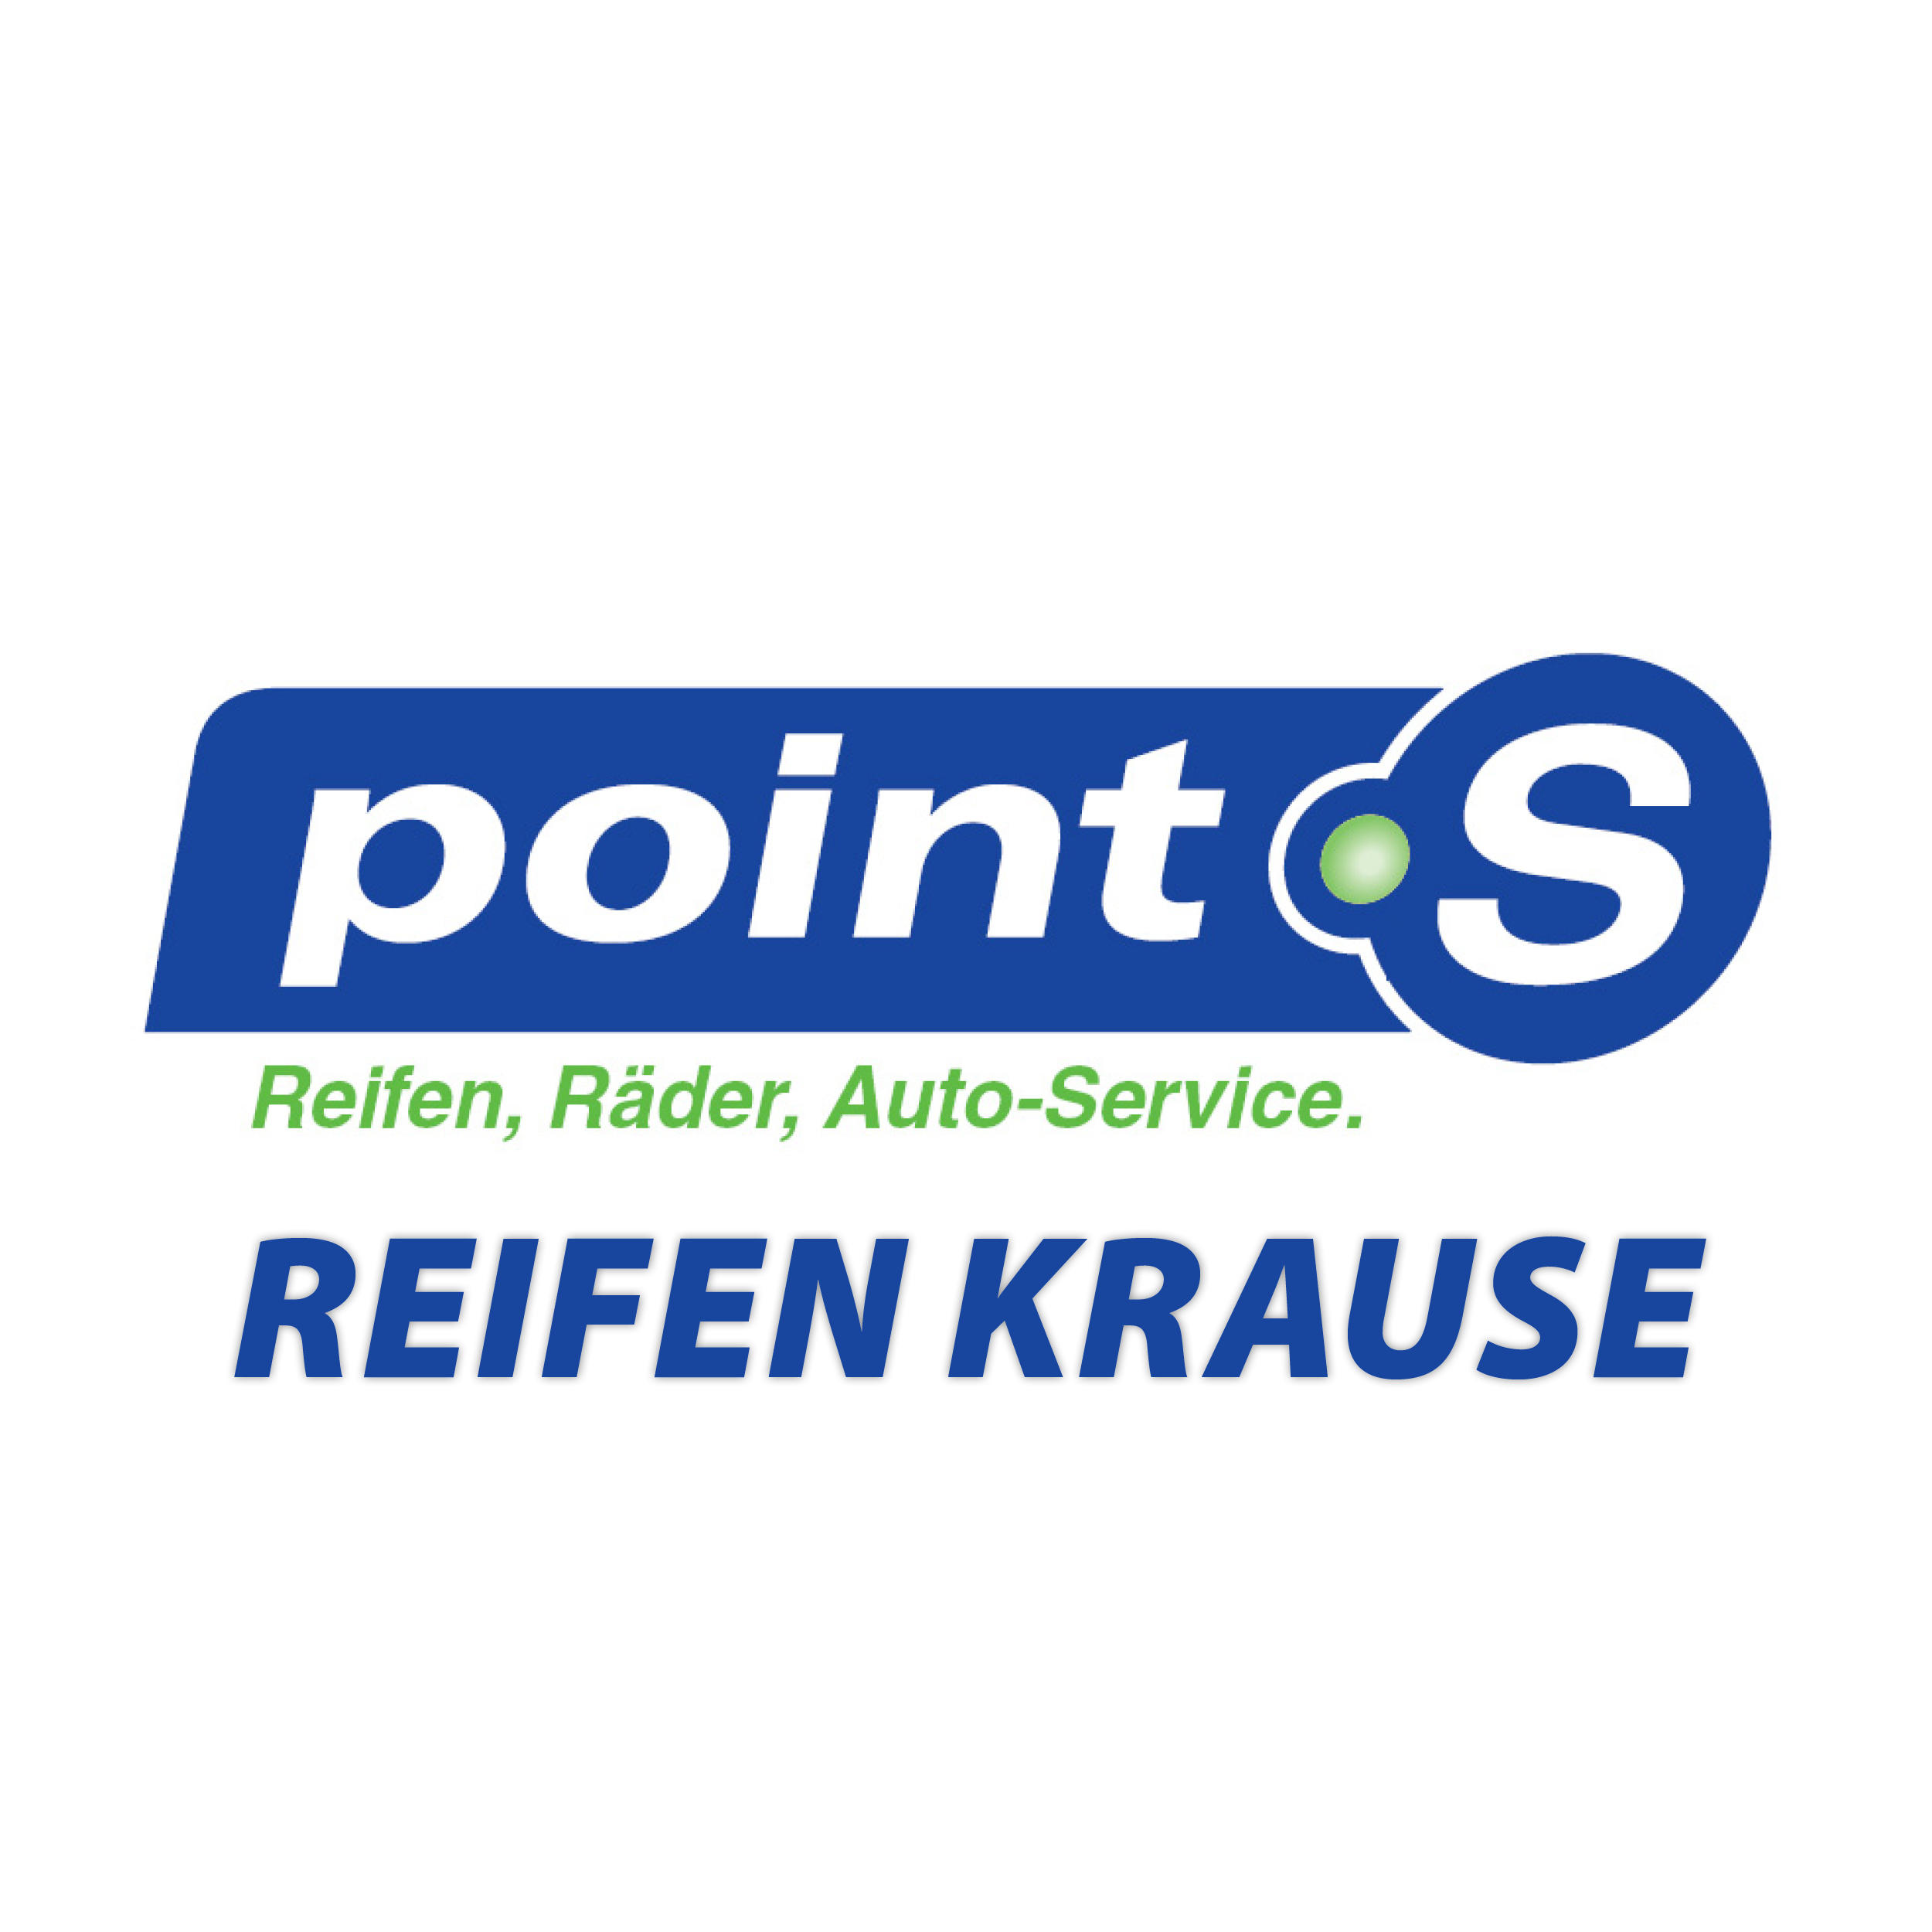 Point S Reifen Krause in Dorsten